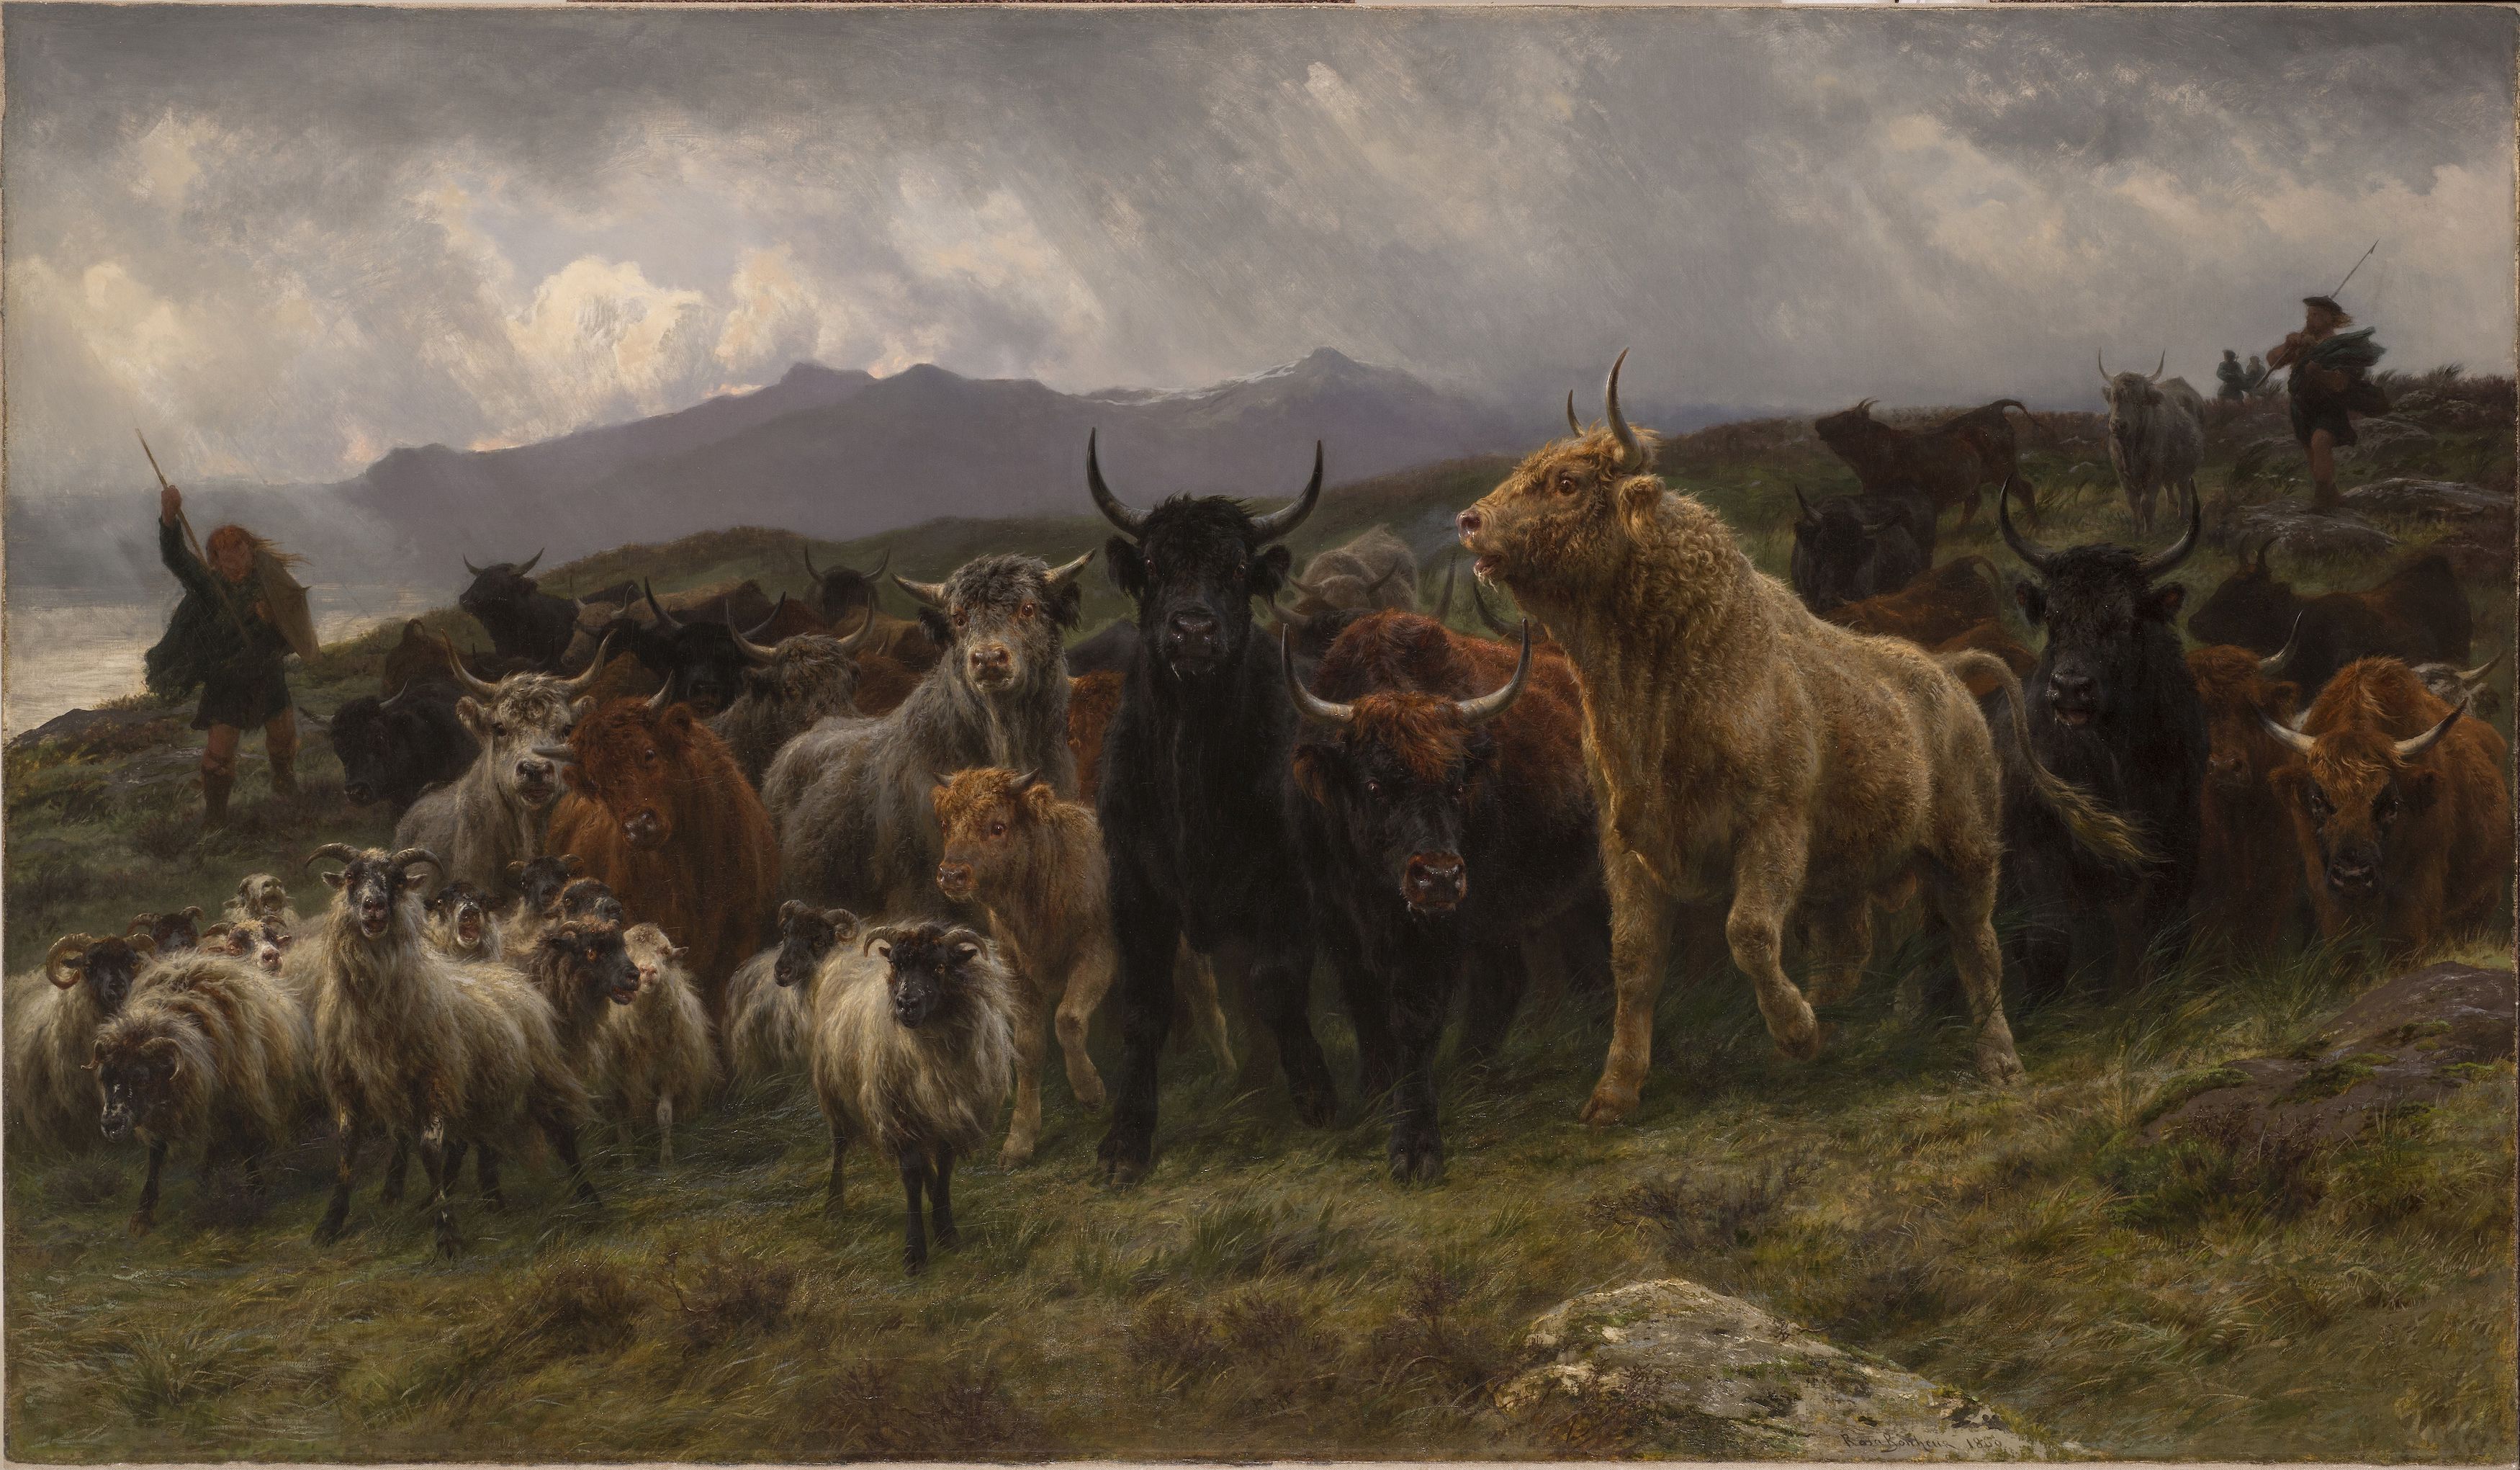 Yayla Yolu (orig. "Highland Raid") by Rosa Bonheur - 1860 - 129.5 x 213.3 cm 